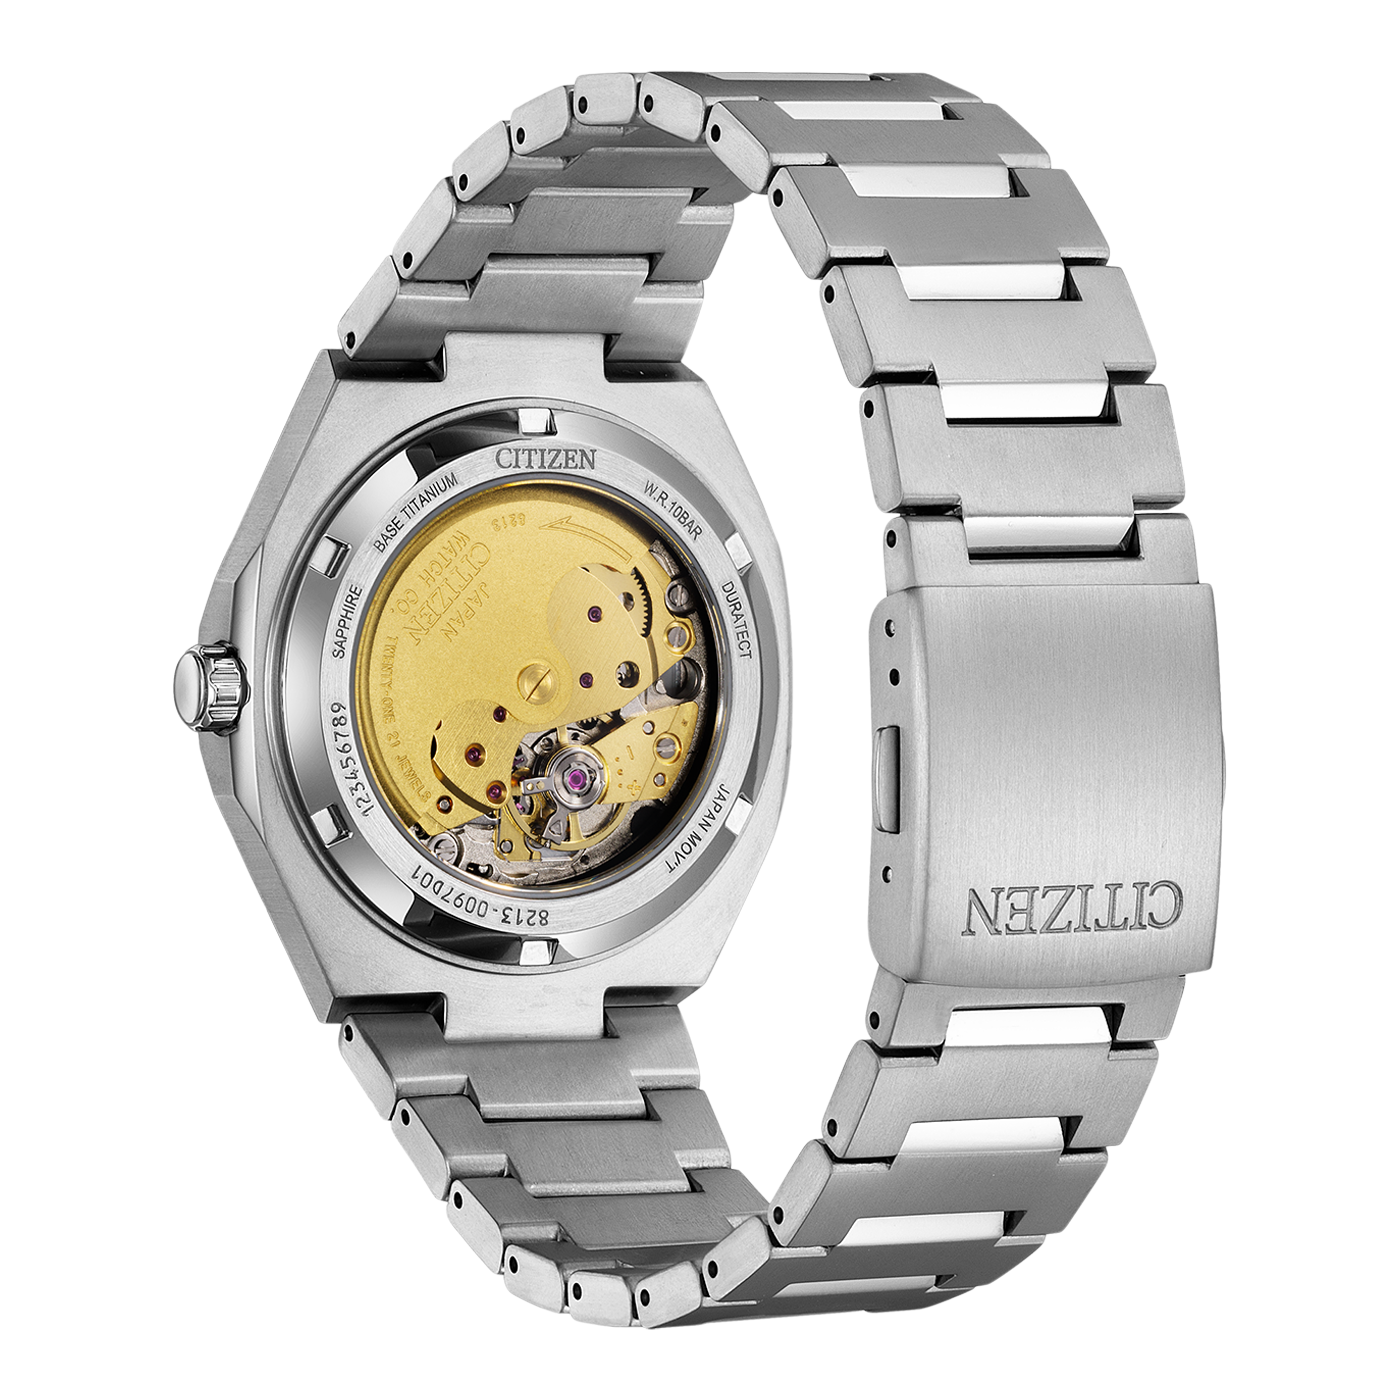 Citizen NJ0180-80M Zenshin Super Titanium Men's Watch Automatic NJ0180-80M